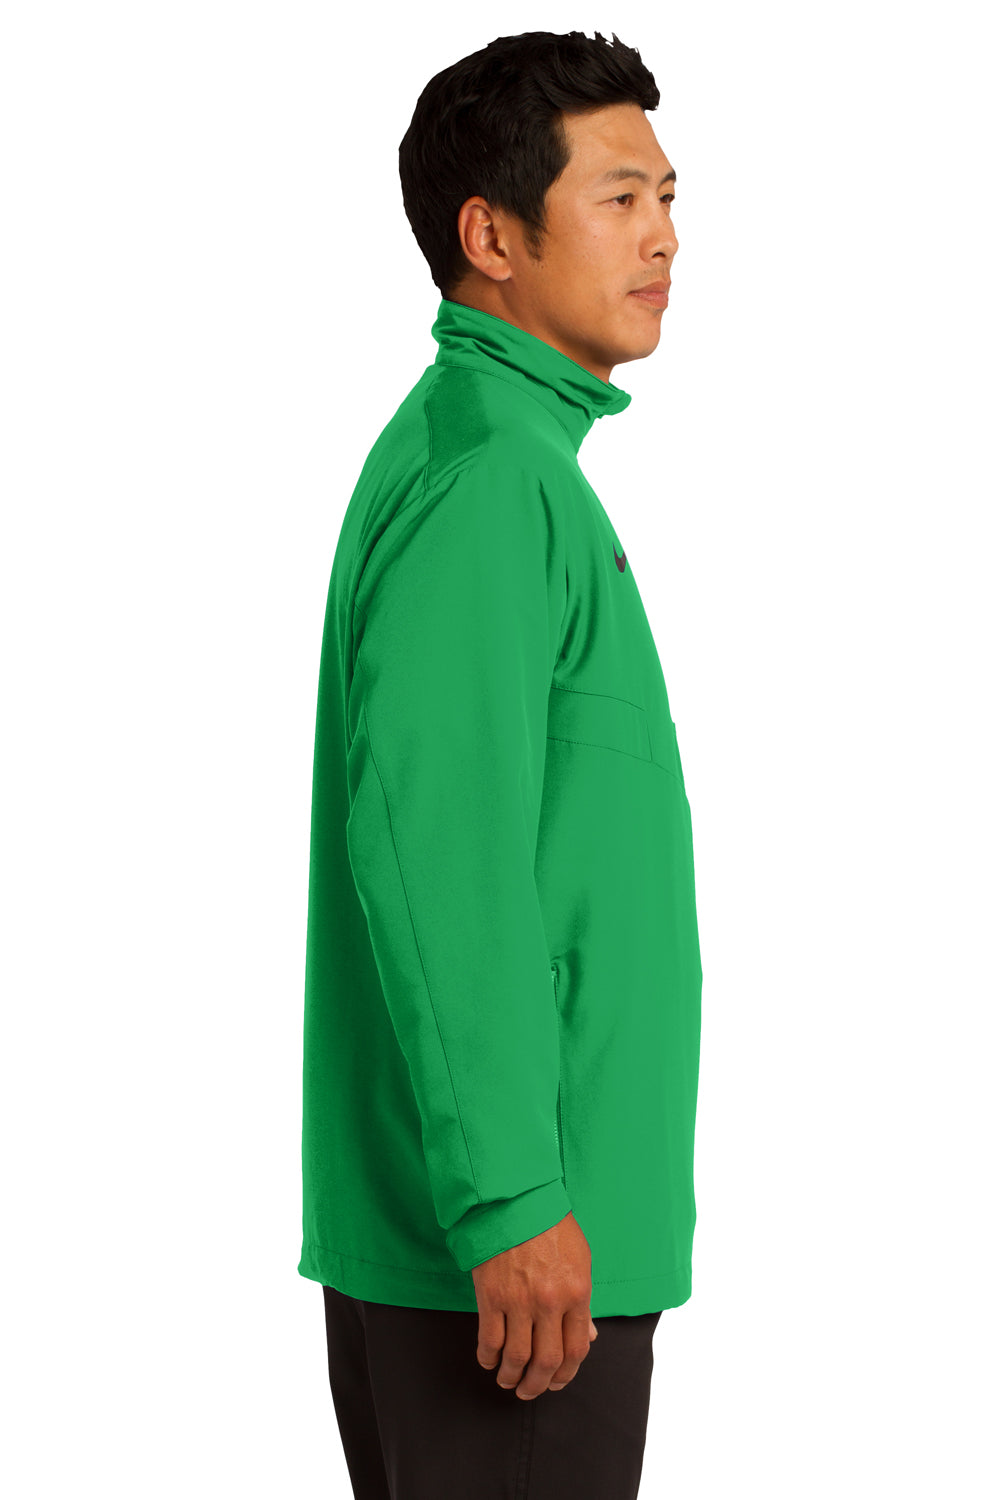 Nike 578675 Mens 1/4 Zip Wind Jacket Lucky Green Side